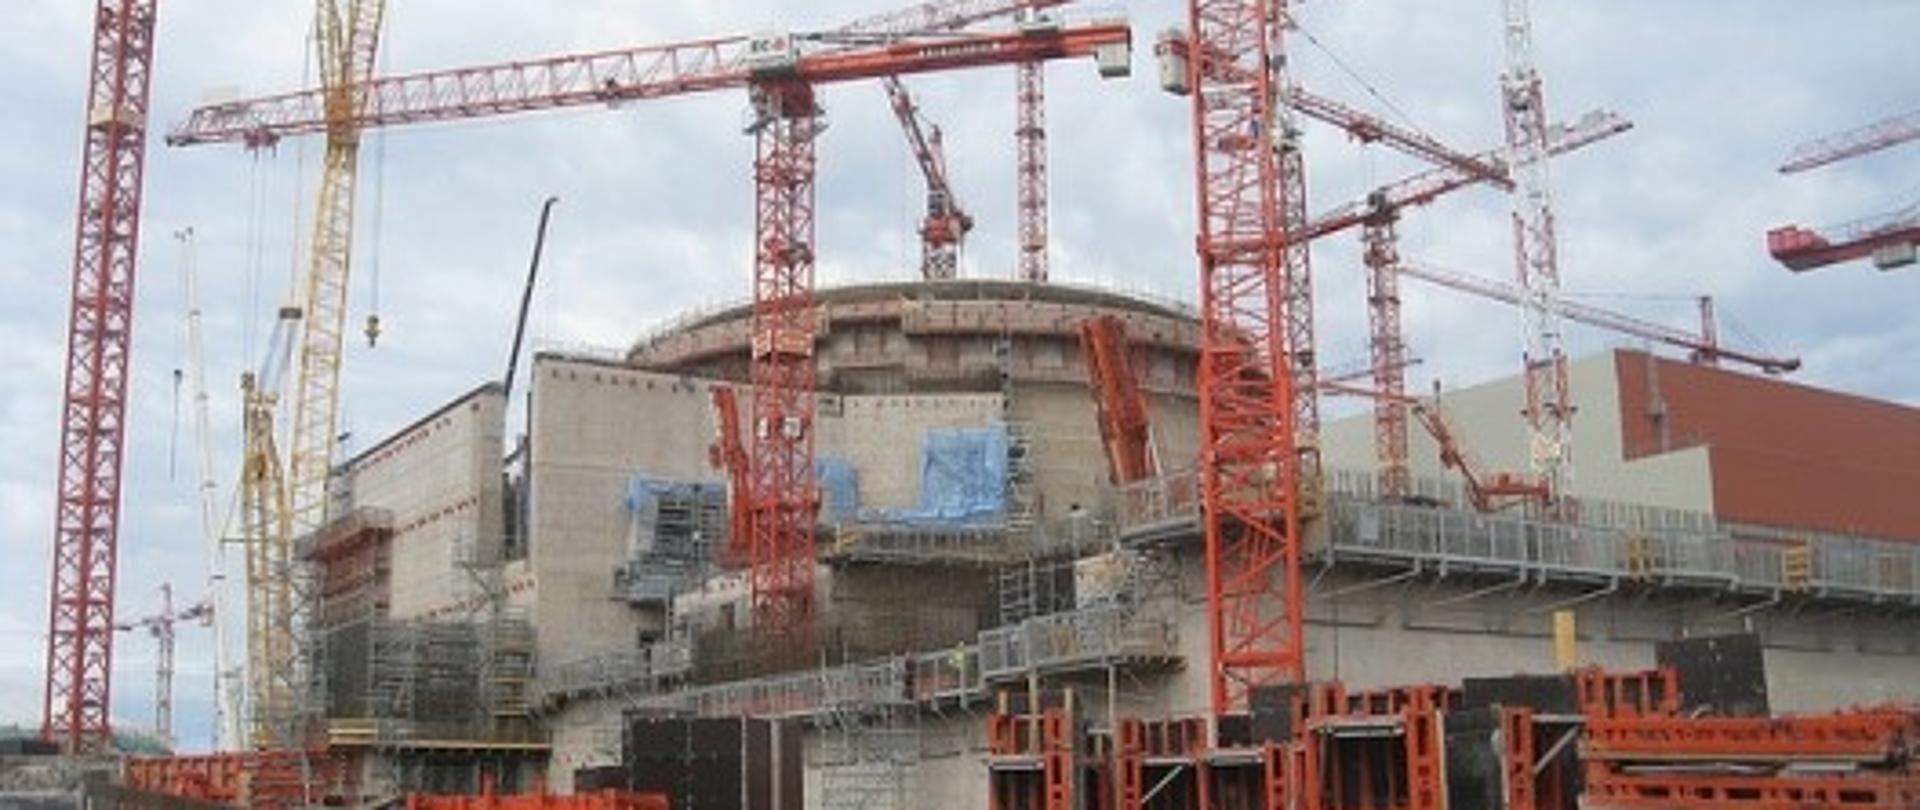 Zdjęcie przedstawiające elektrownię jądrową trzeciej generacji w budowie widać las dźwigów i betonową konstrukcję elektrowni